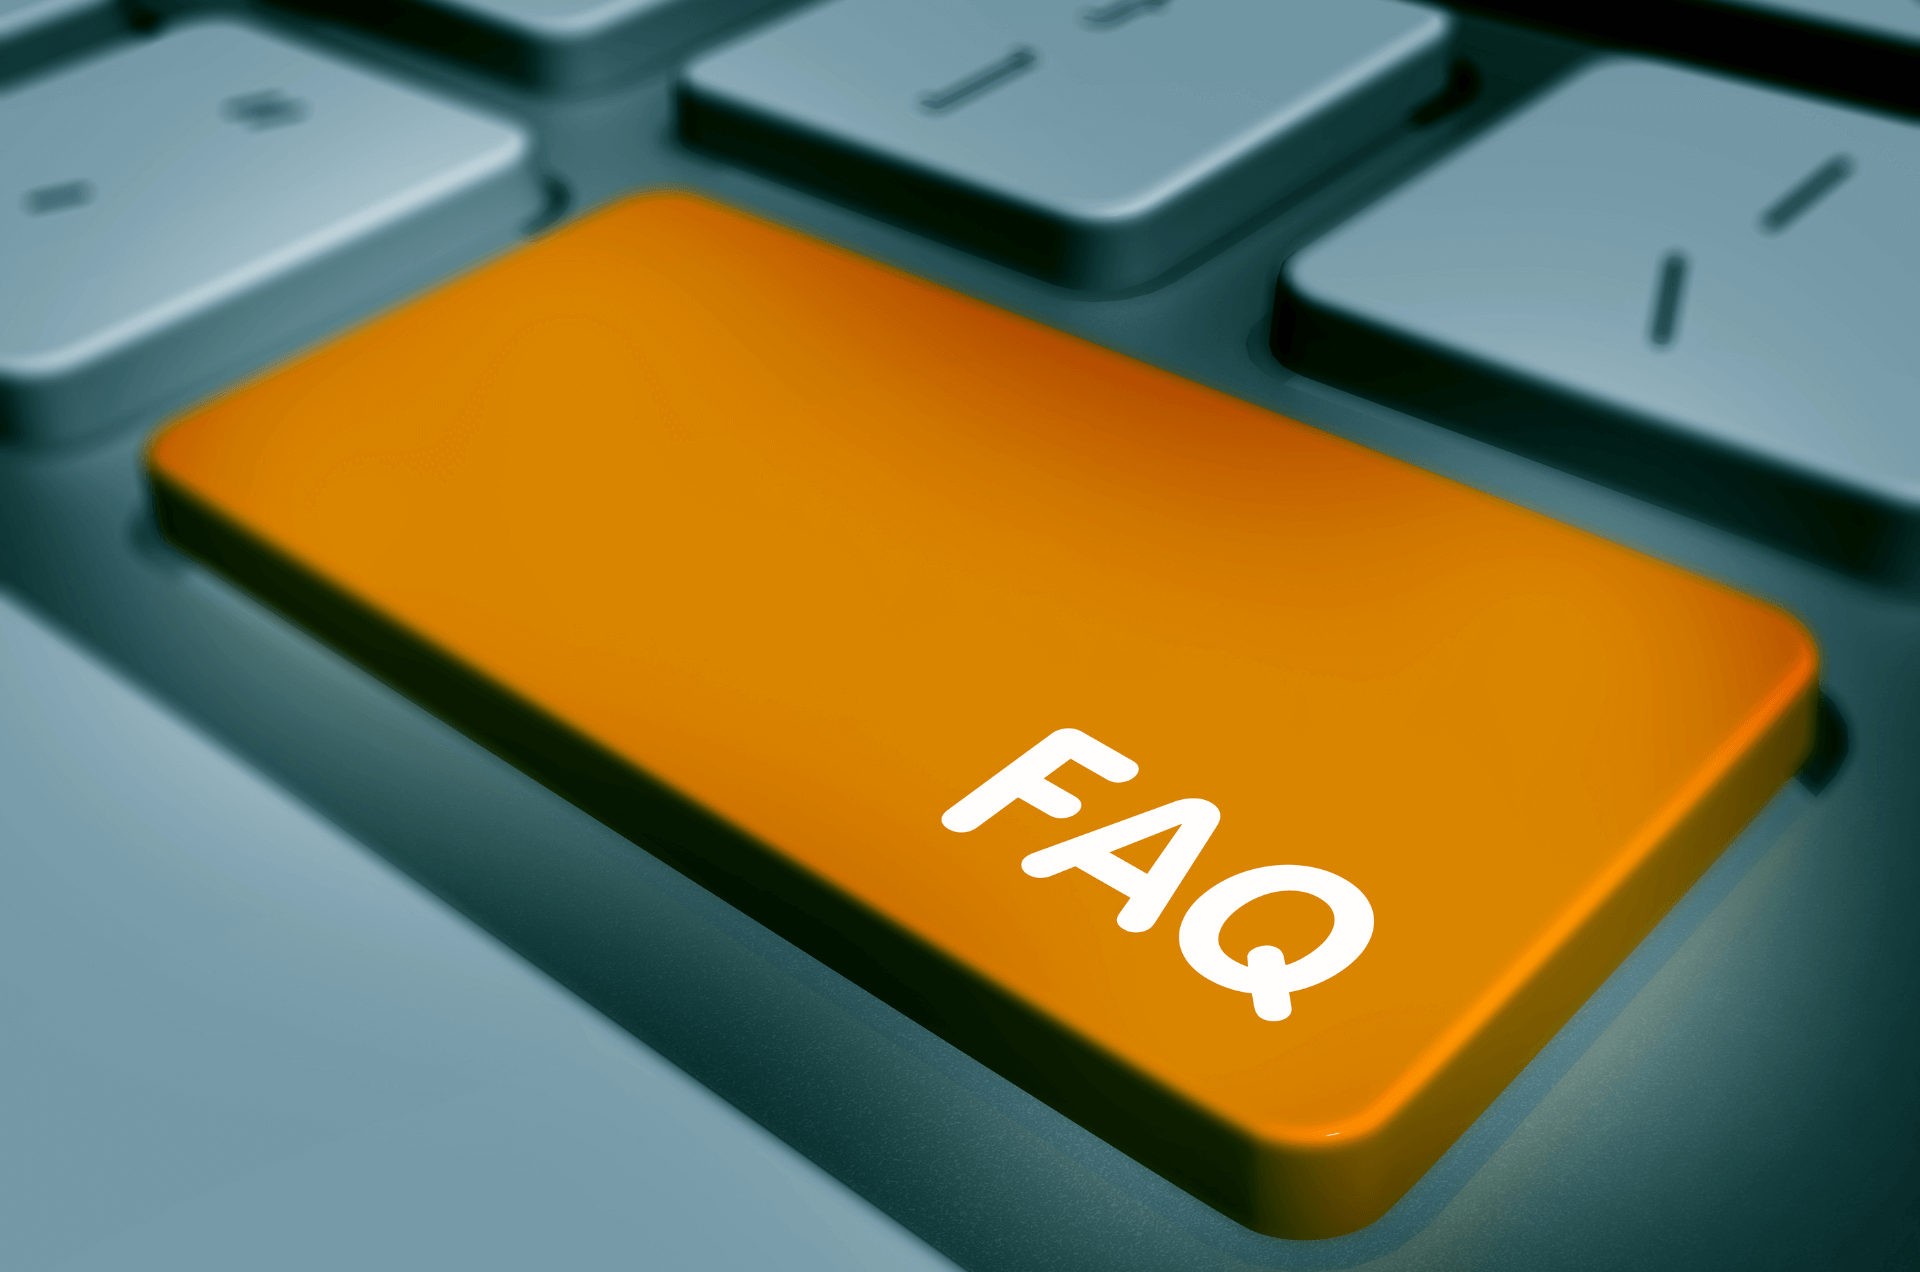 Tastatur mit einer hervorgehobenen orangenen Taste, auf der 'FAQ' steht.